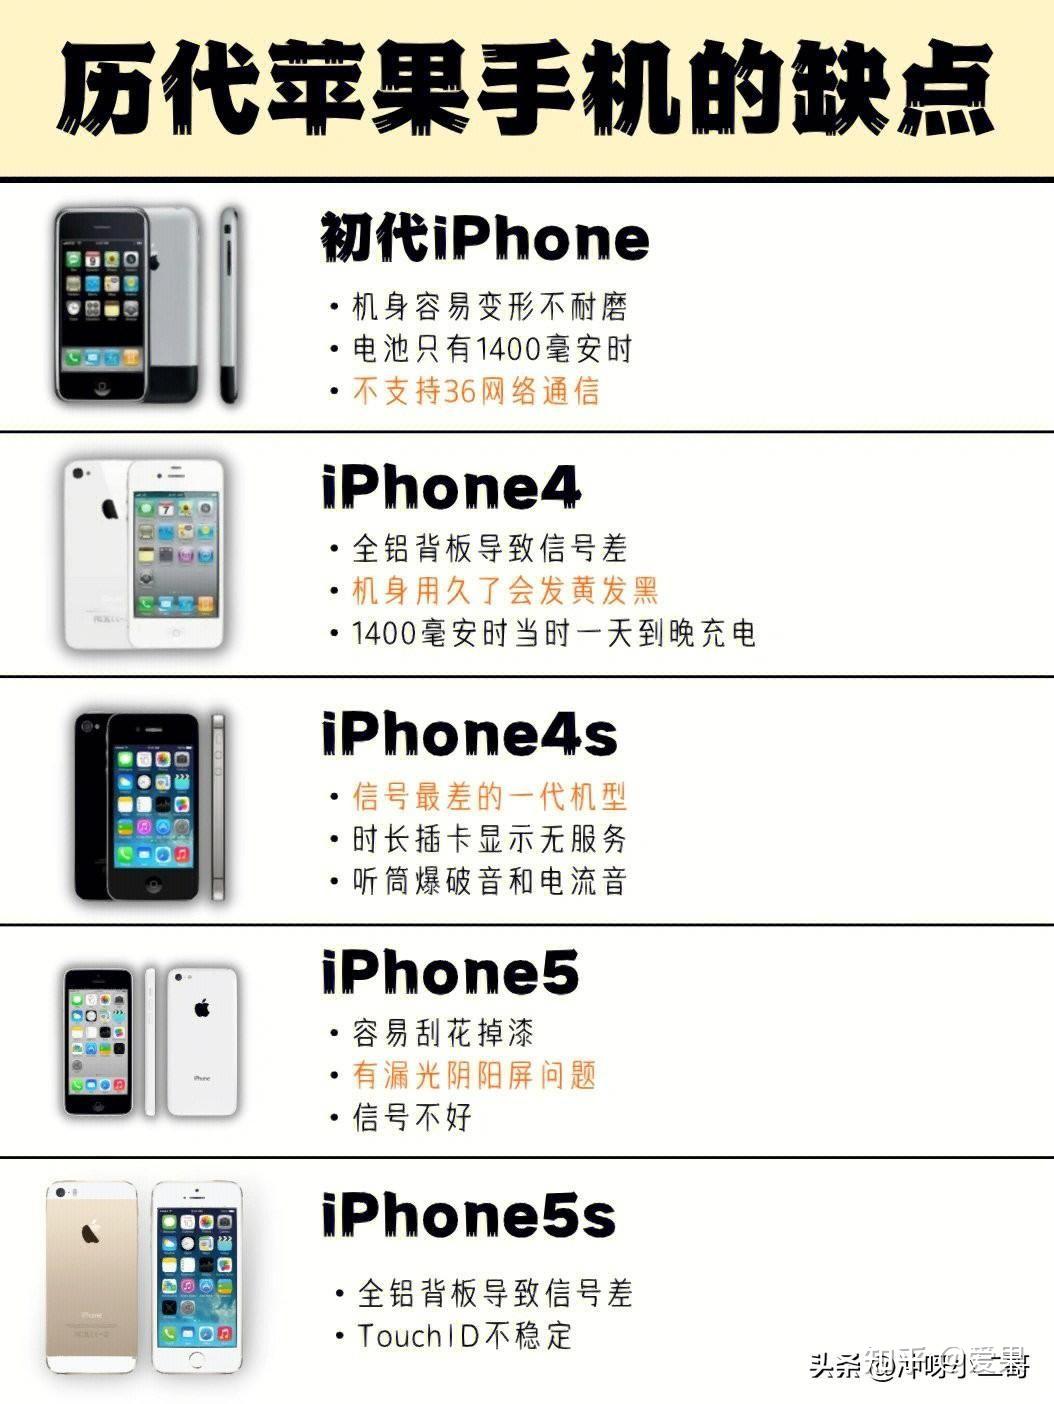 历代iphone缺点汇总,你最受不了哪个缺点?